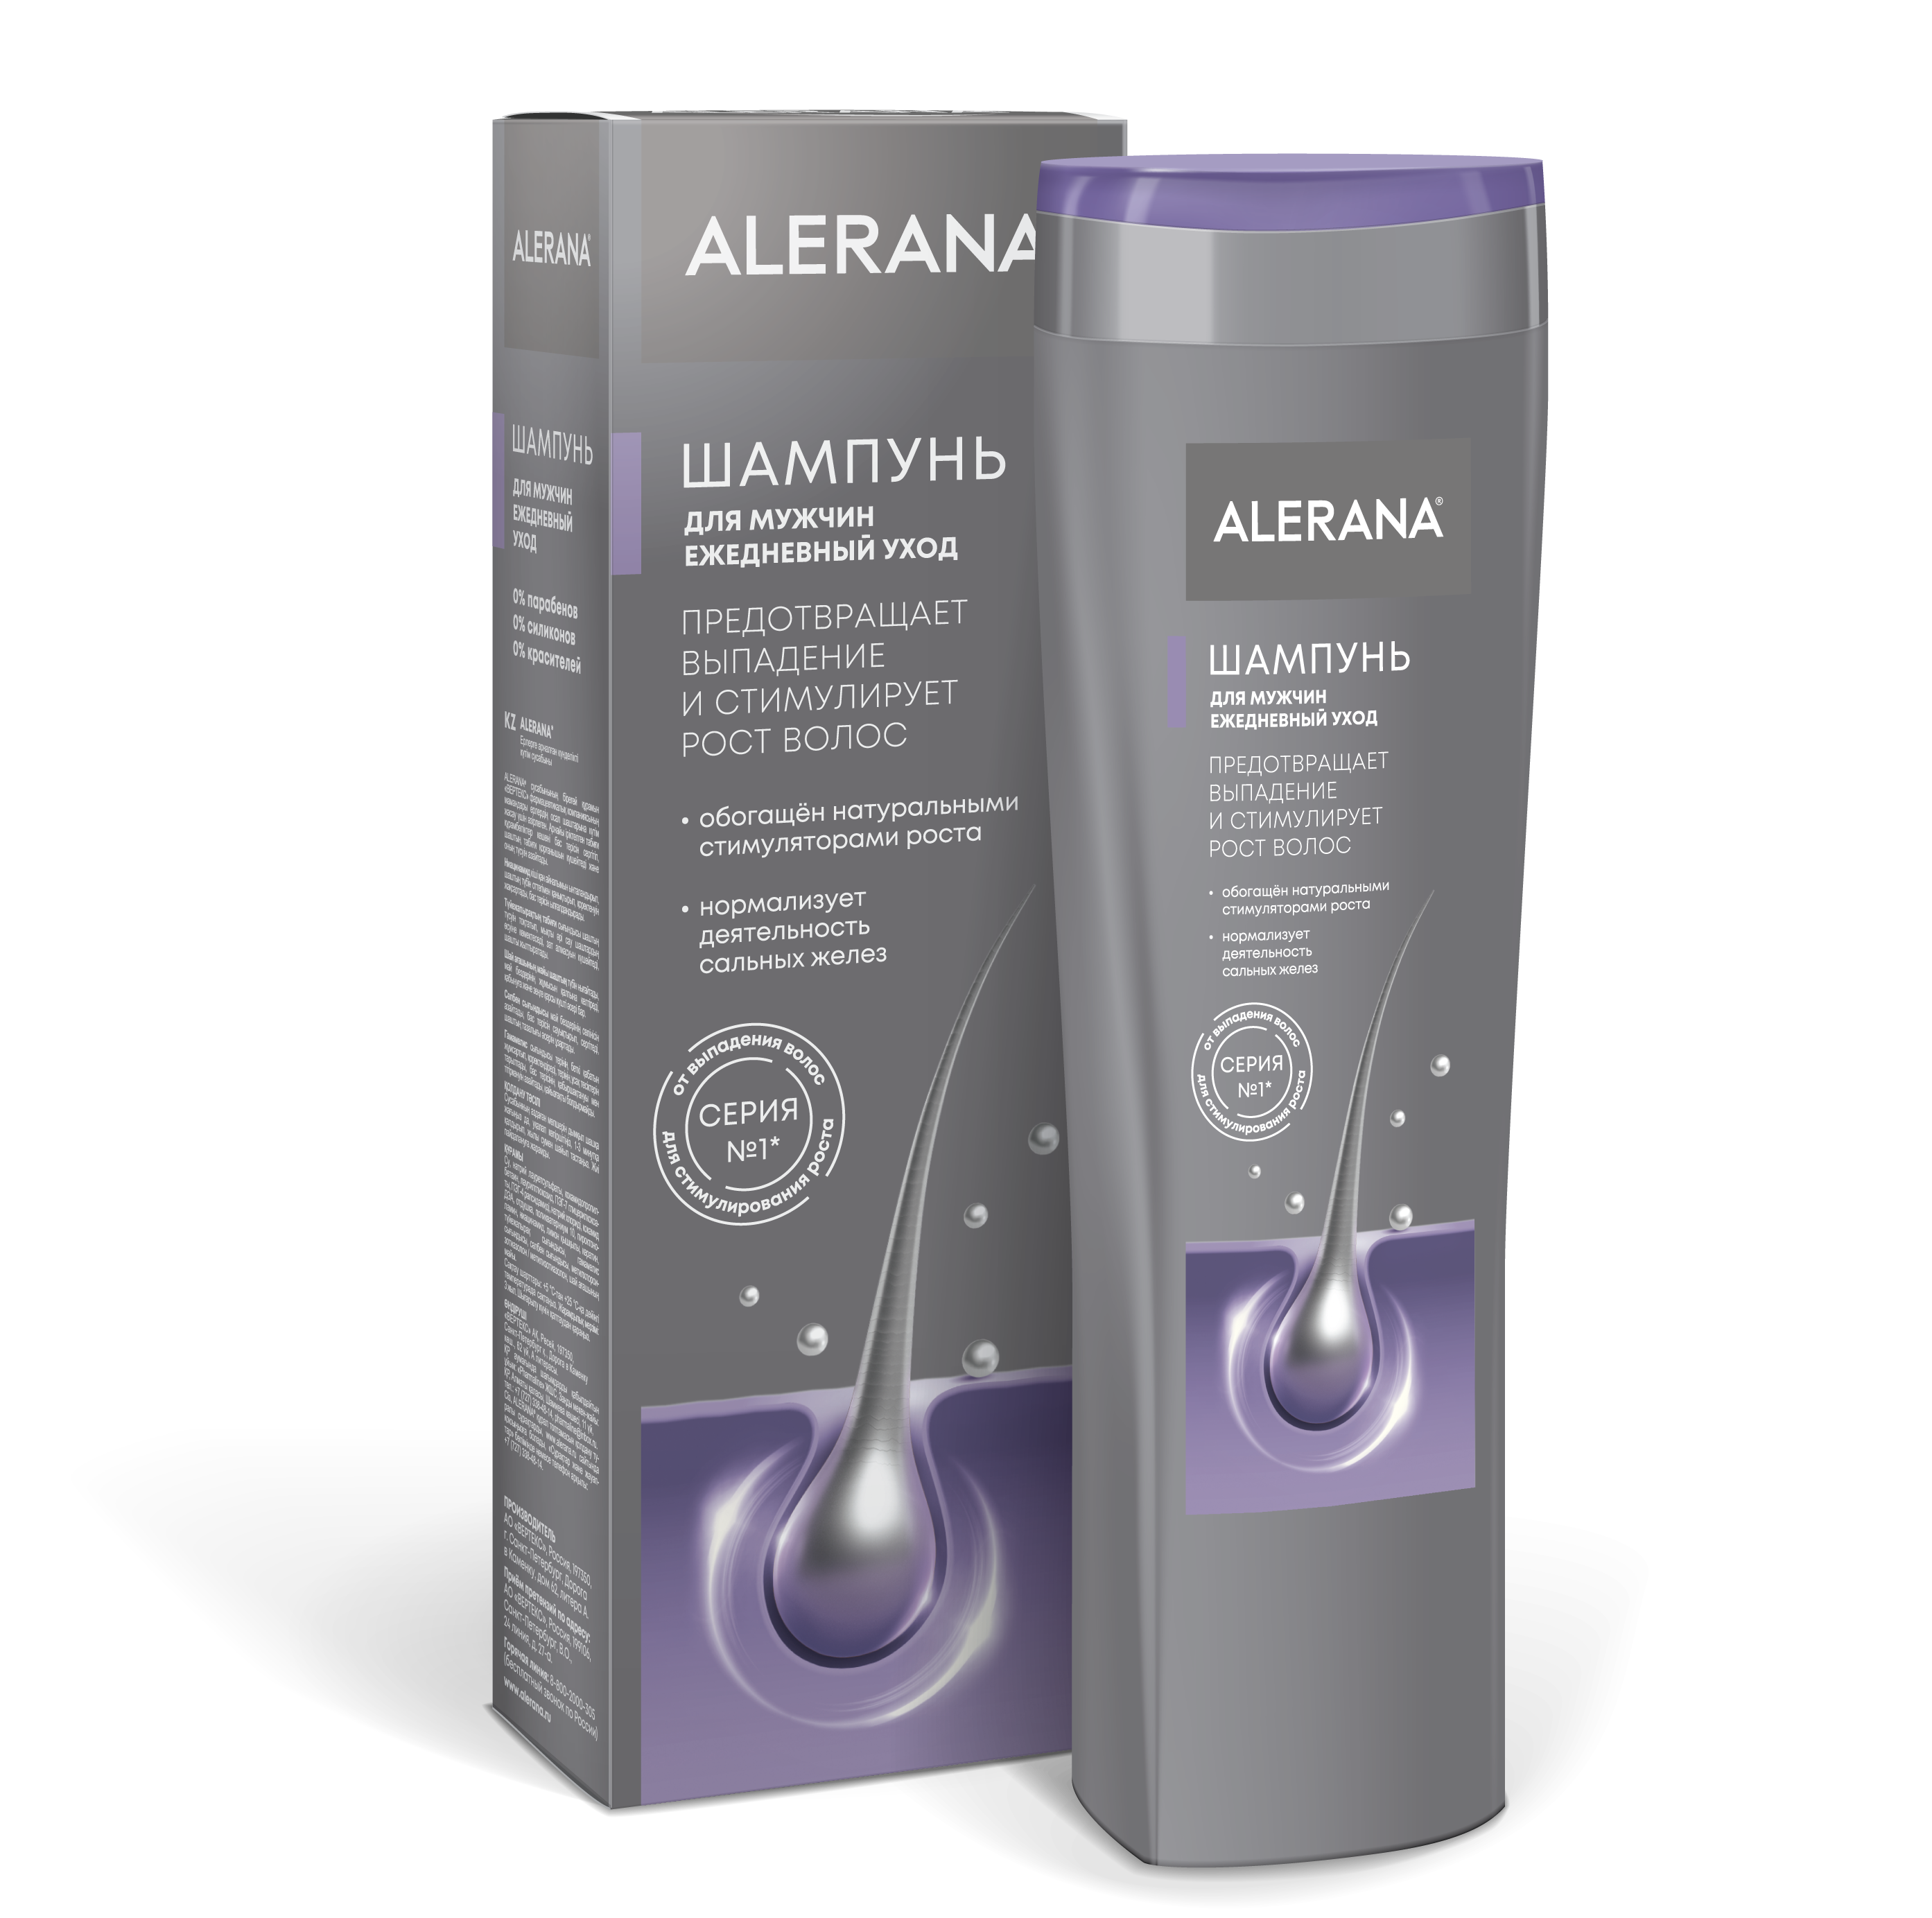 ALERANA<sup>®</sup> Shampoo for men Daily care